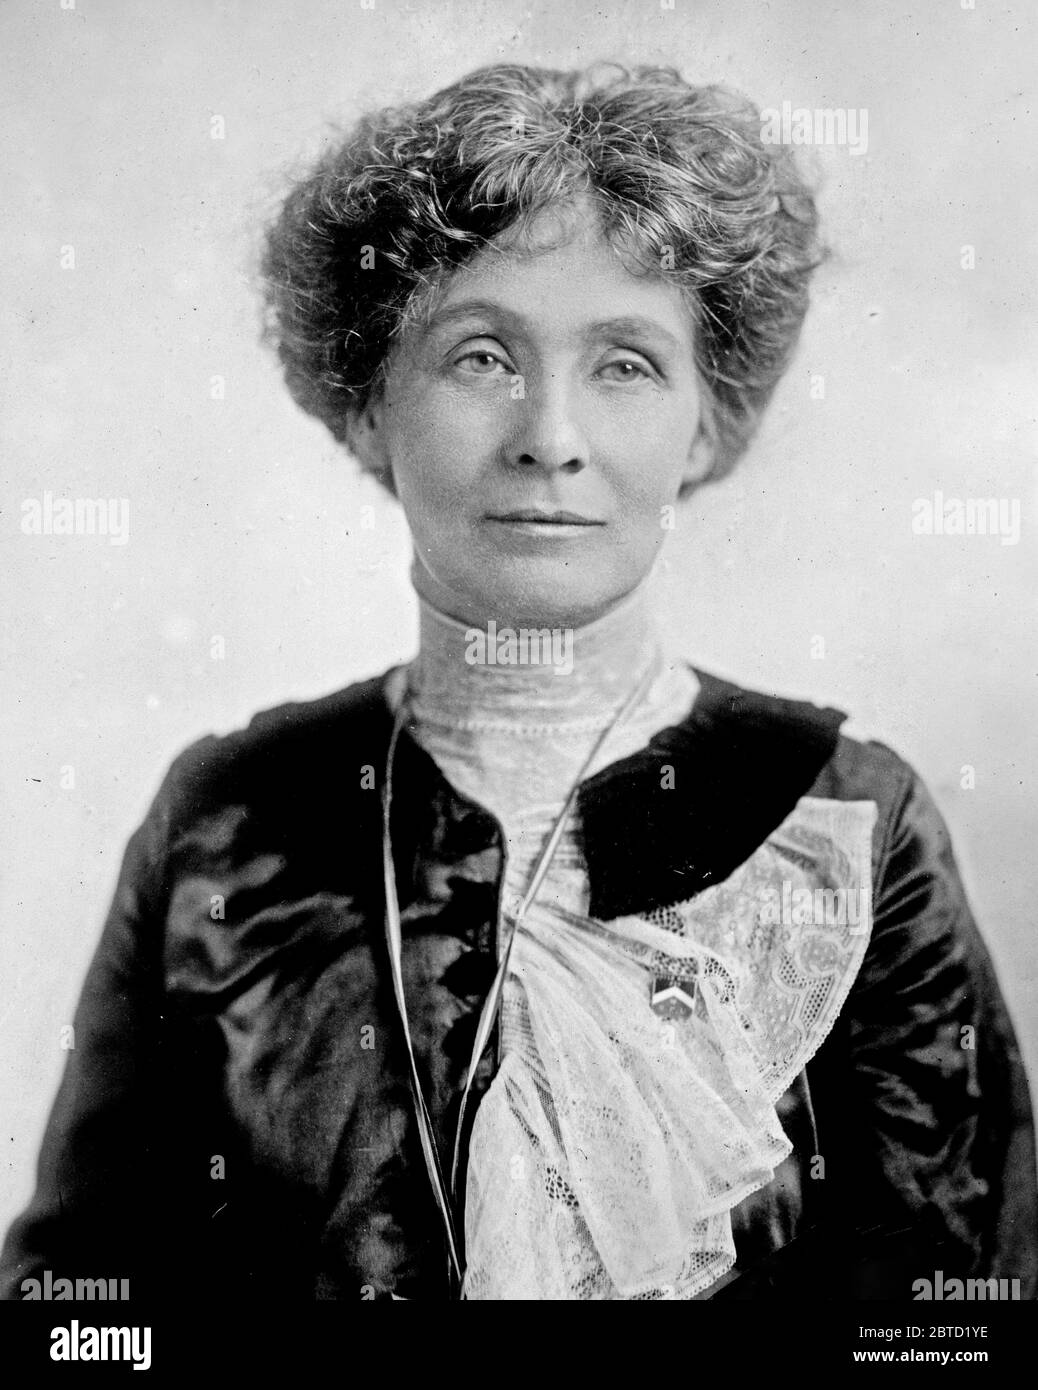 Inglese suffragista e attivista politico Emmeline Pankhurst (1858-1928), leader del movimento a suffragio femminile britannico ca. 1912 Foto Stock